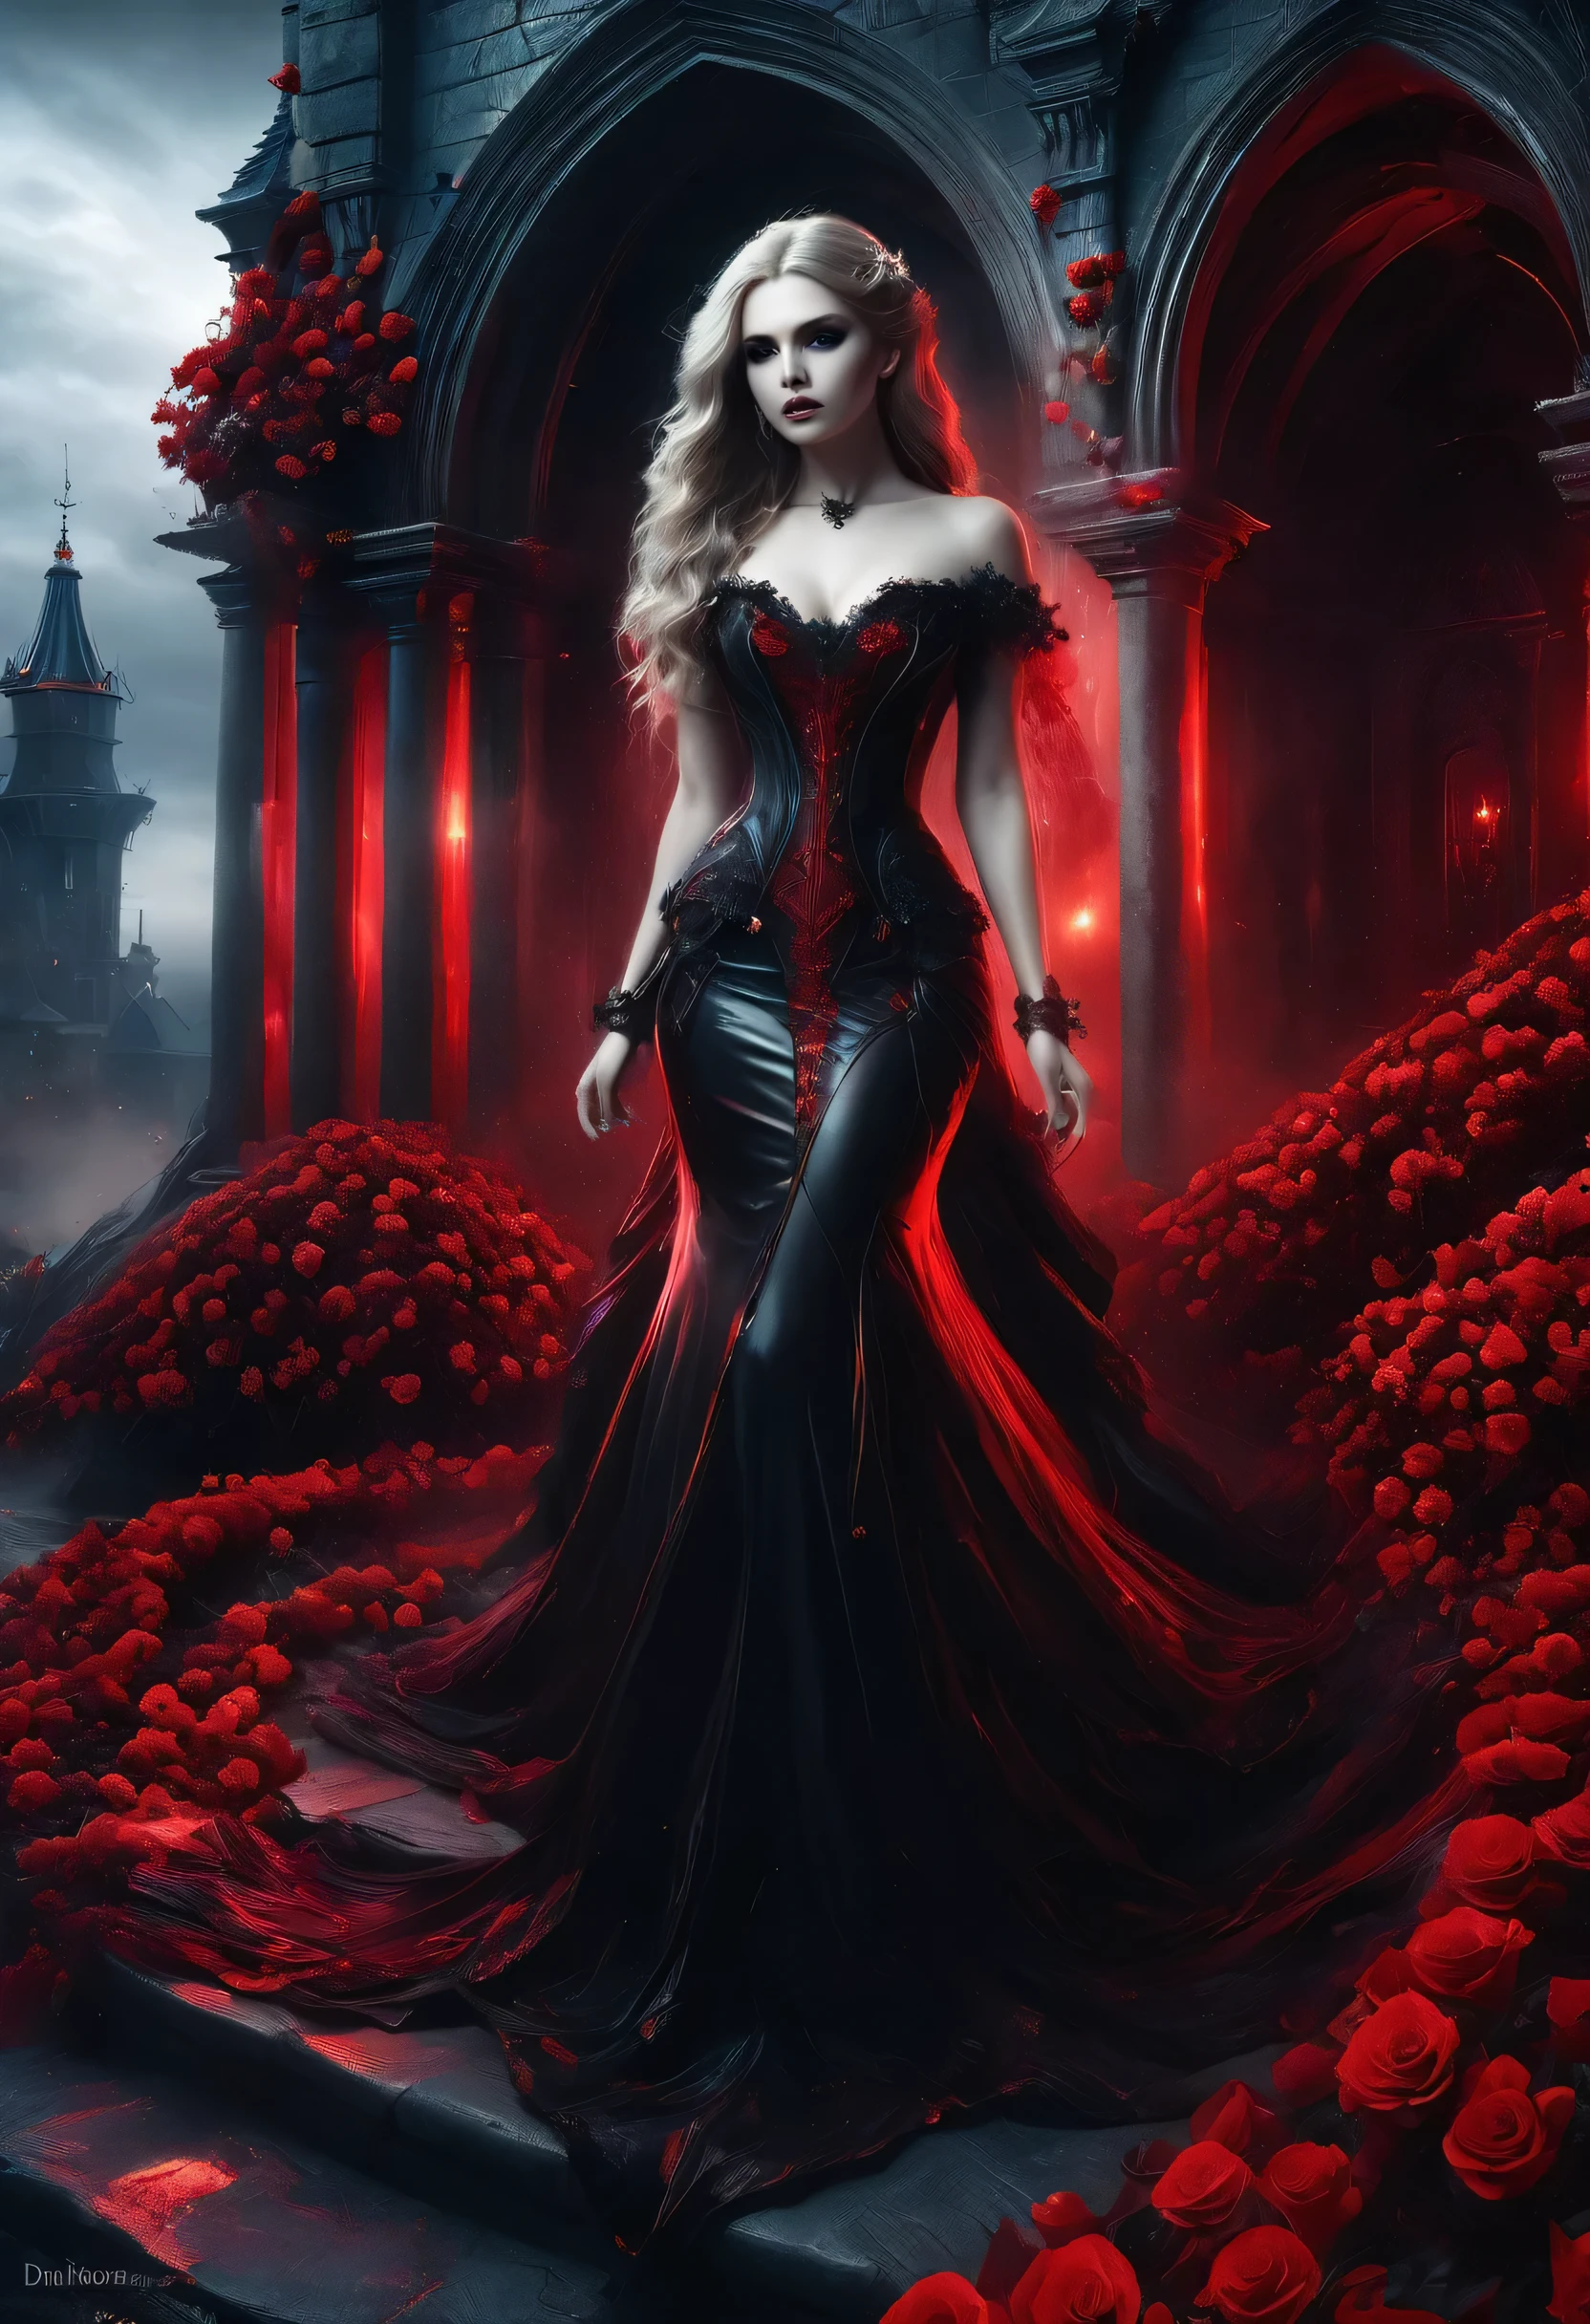 Dark Fantasy-Kunst, Fantasy-Kunst, Gothic Kunst,  ein Bild von einem weiblichen Vampir, exquisite Schönheit, Ganzkörperaufnahme, dunkler Glamour-Shot,  blasse weiße Haut, dunkelblondes Haar, lange Haare, welliges Haar, (eisiges Grau: 1.3) Augen,  Sie trägt ein (Rot: 1.3) Kleid, ArmoRotDress, verflochten mit (Schwarz: 1.3)  roses betmd, High Heels, dunkle Schlossveranda, RagingNebula